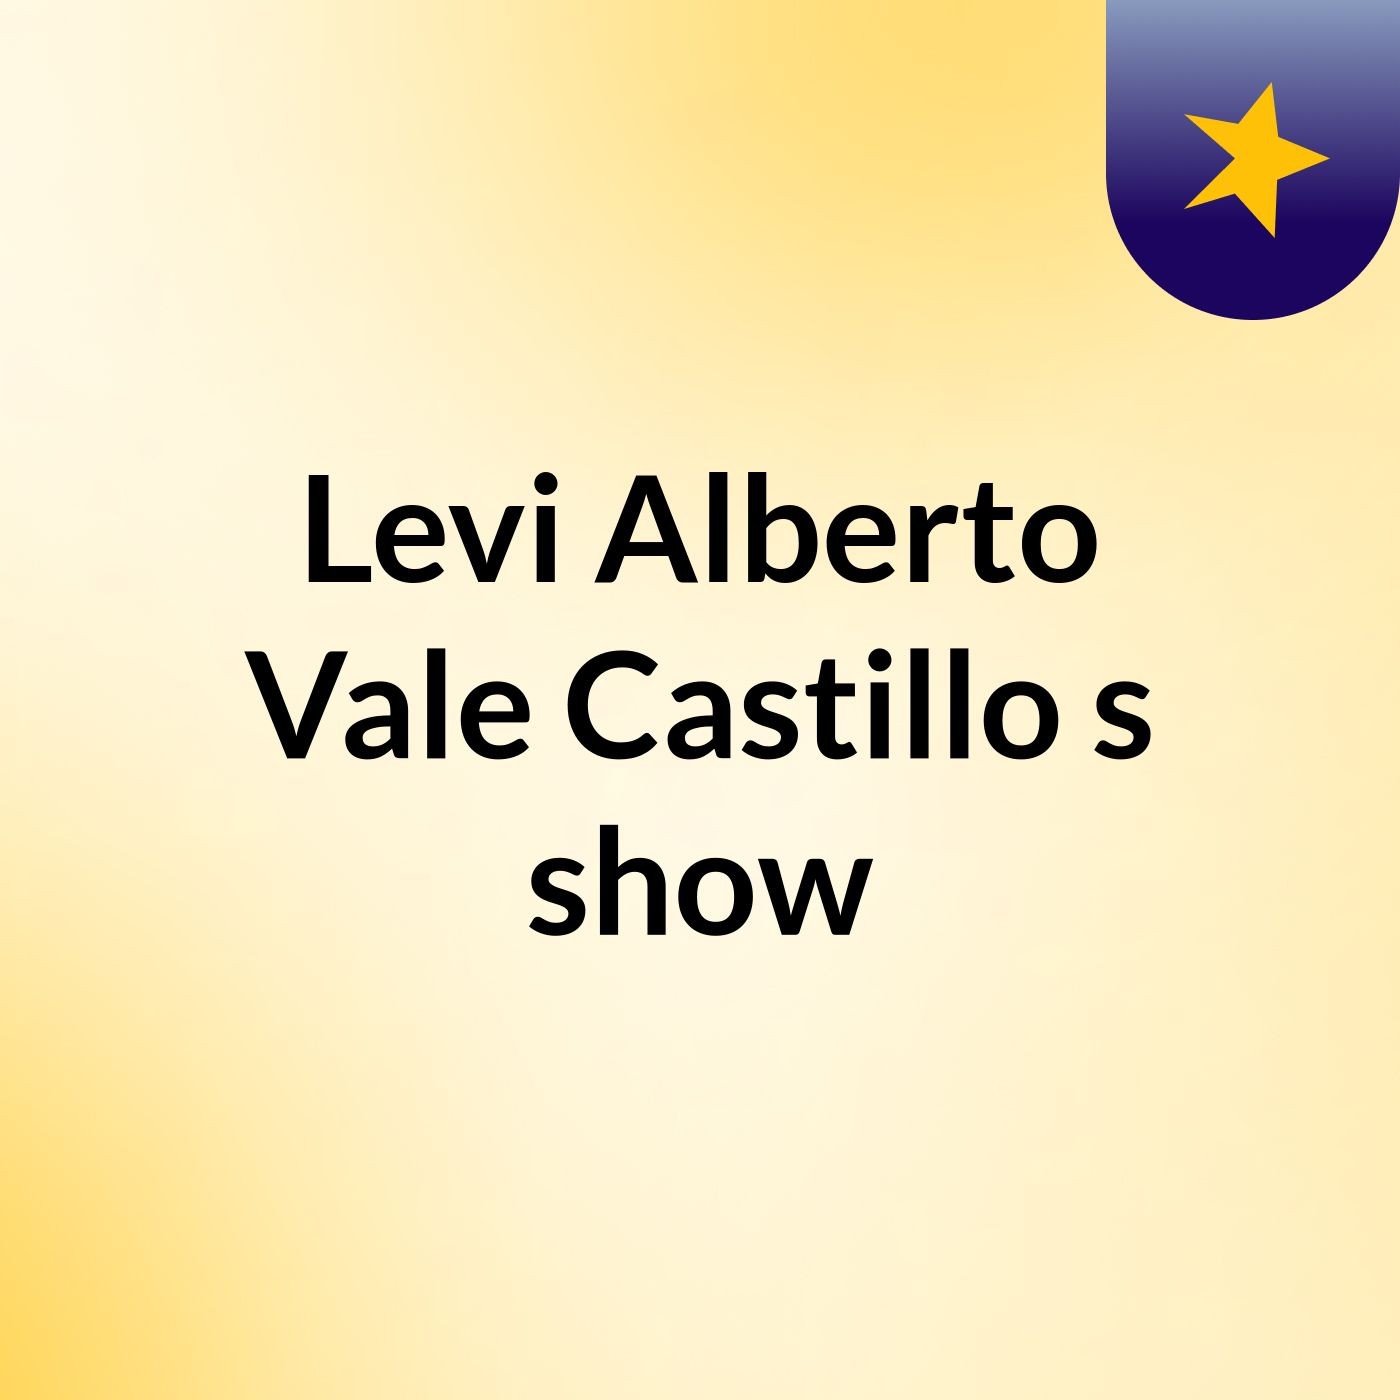 Levi Alberto Vale Castillo's show